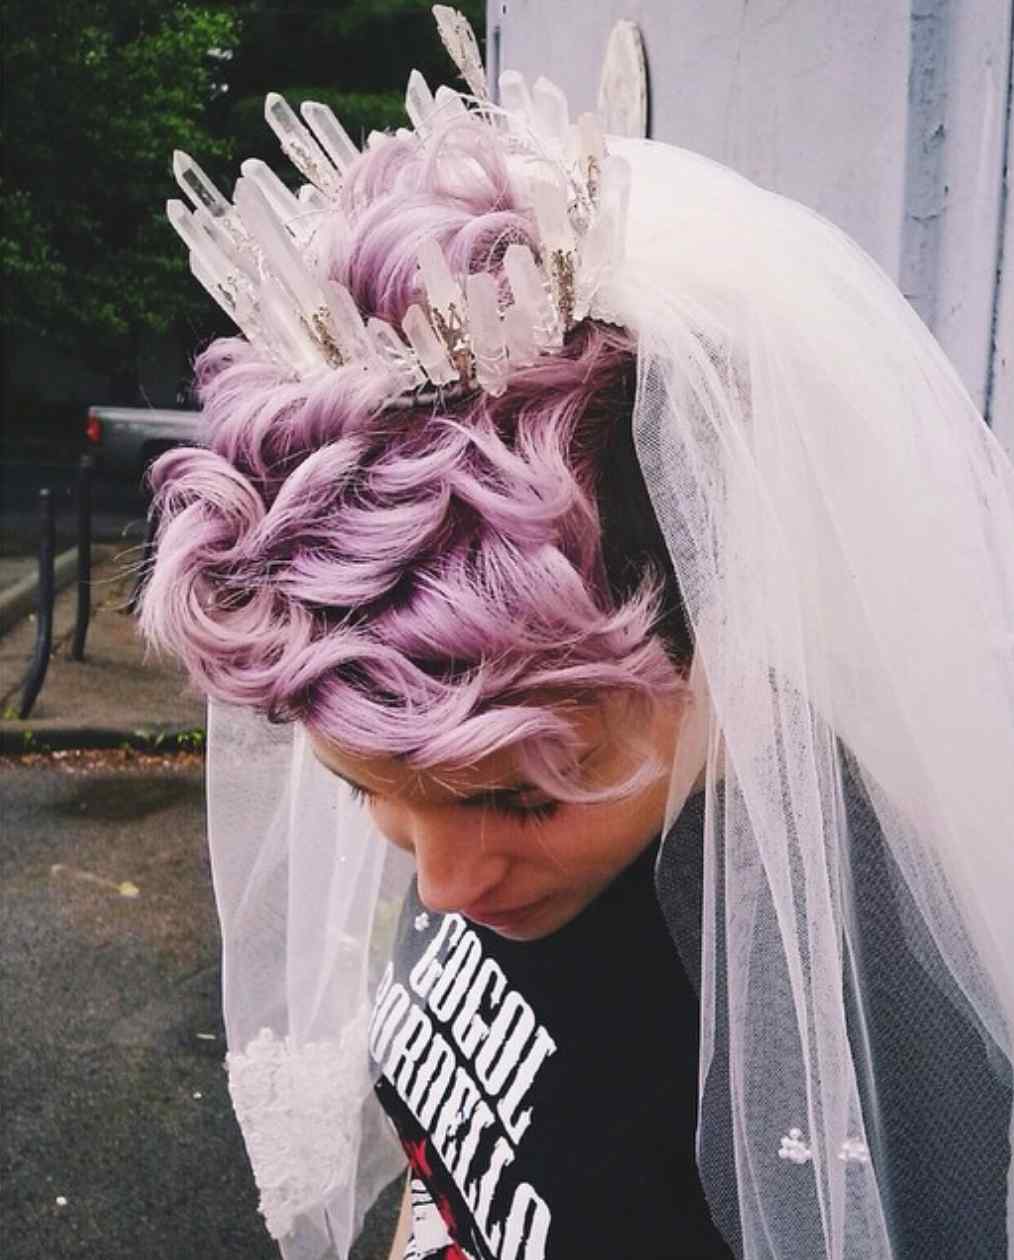 Indie Bride with purple hair in Elemental Child Bridal Crown